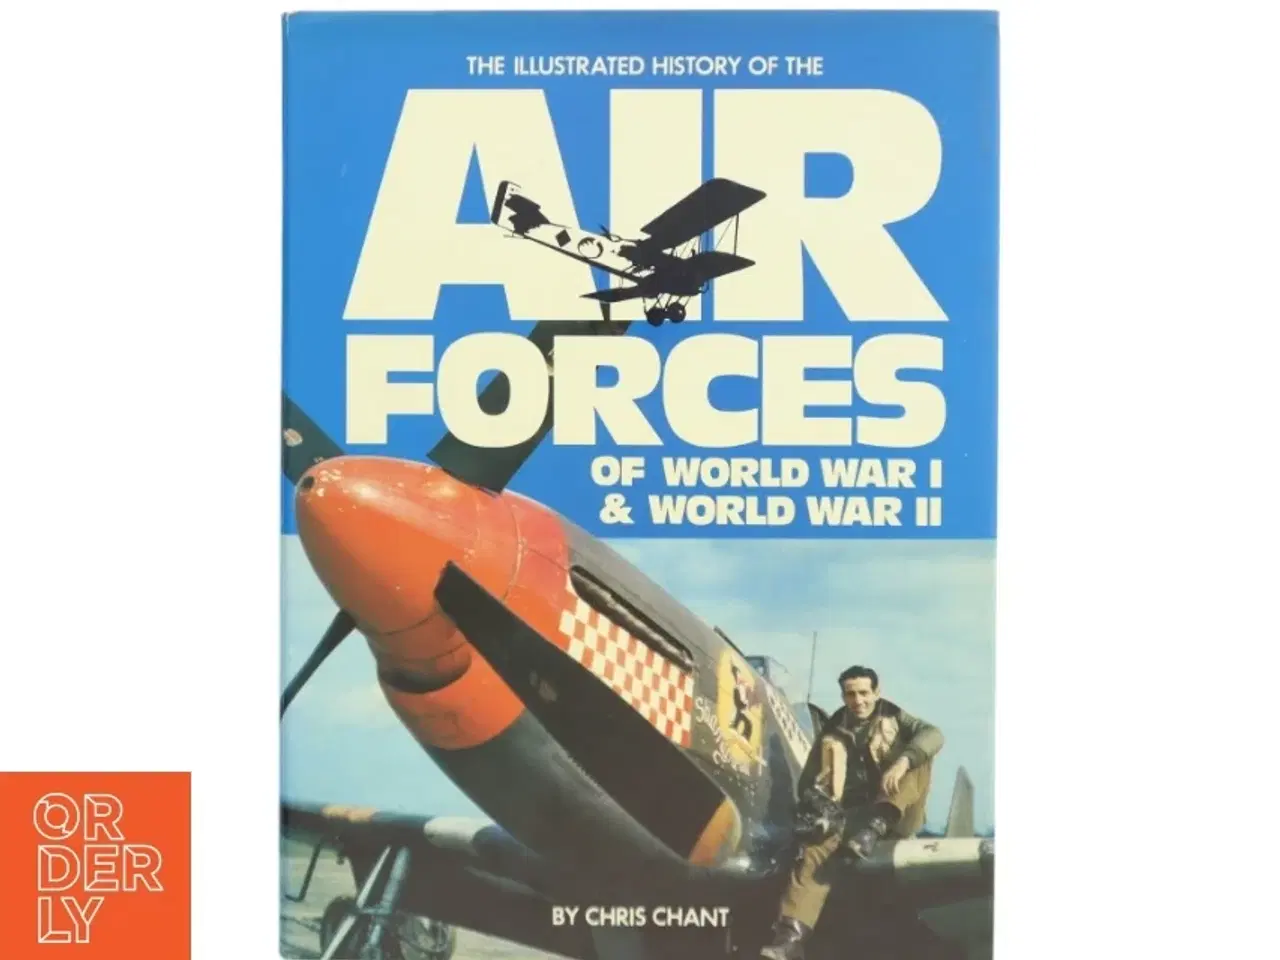 Billede 1 - Illustreret historiebog om flyvevåben under 1. & 2. verdenskrig fra Hamlyn